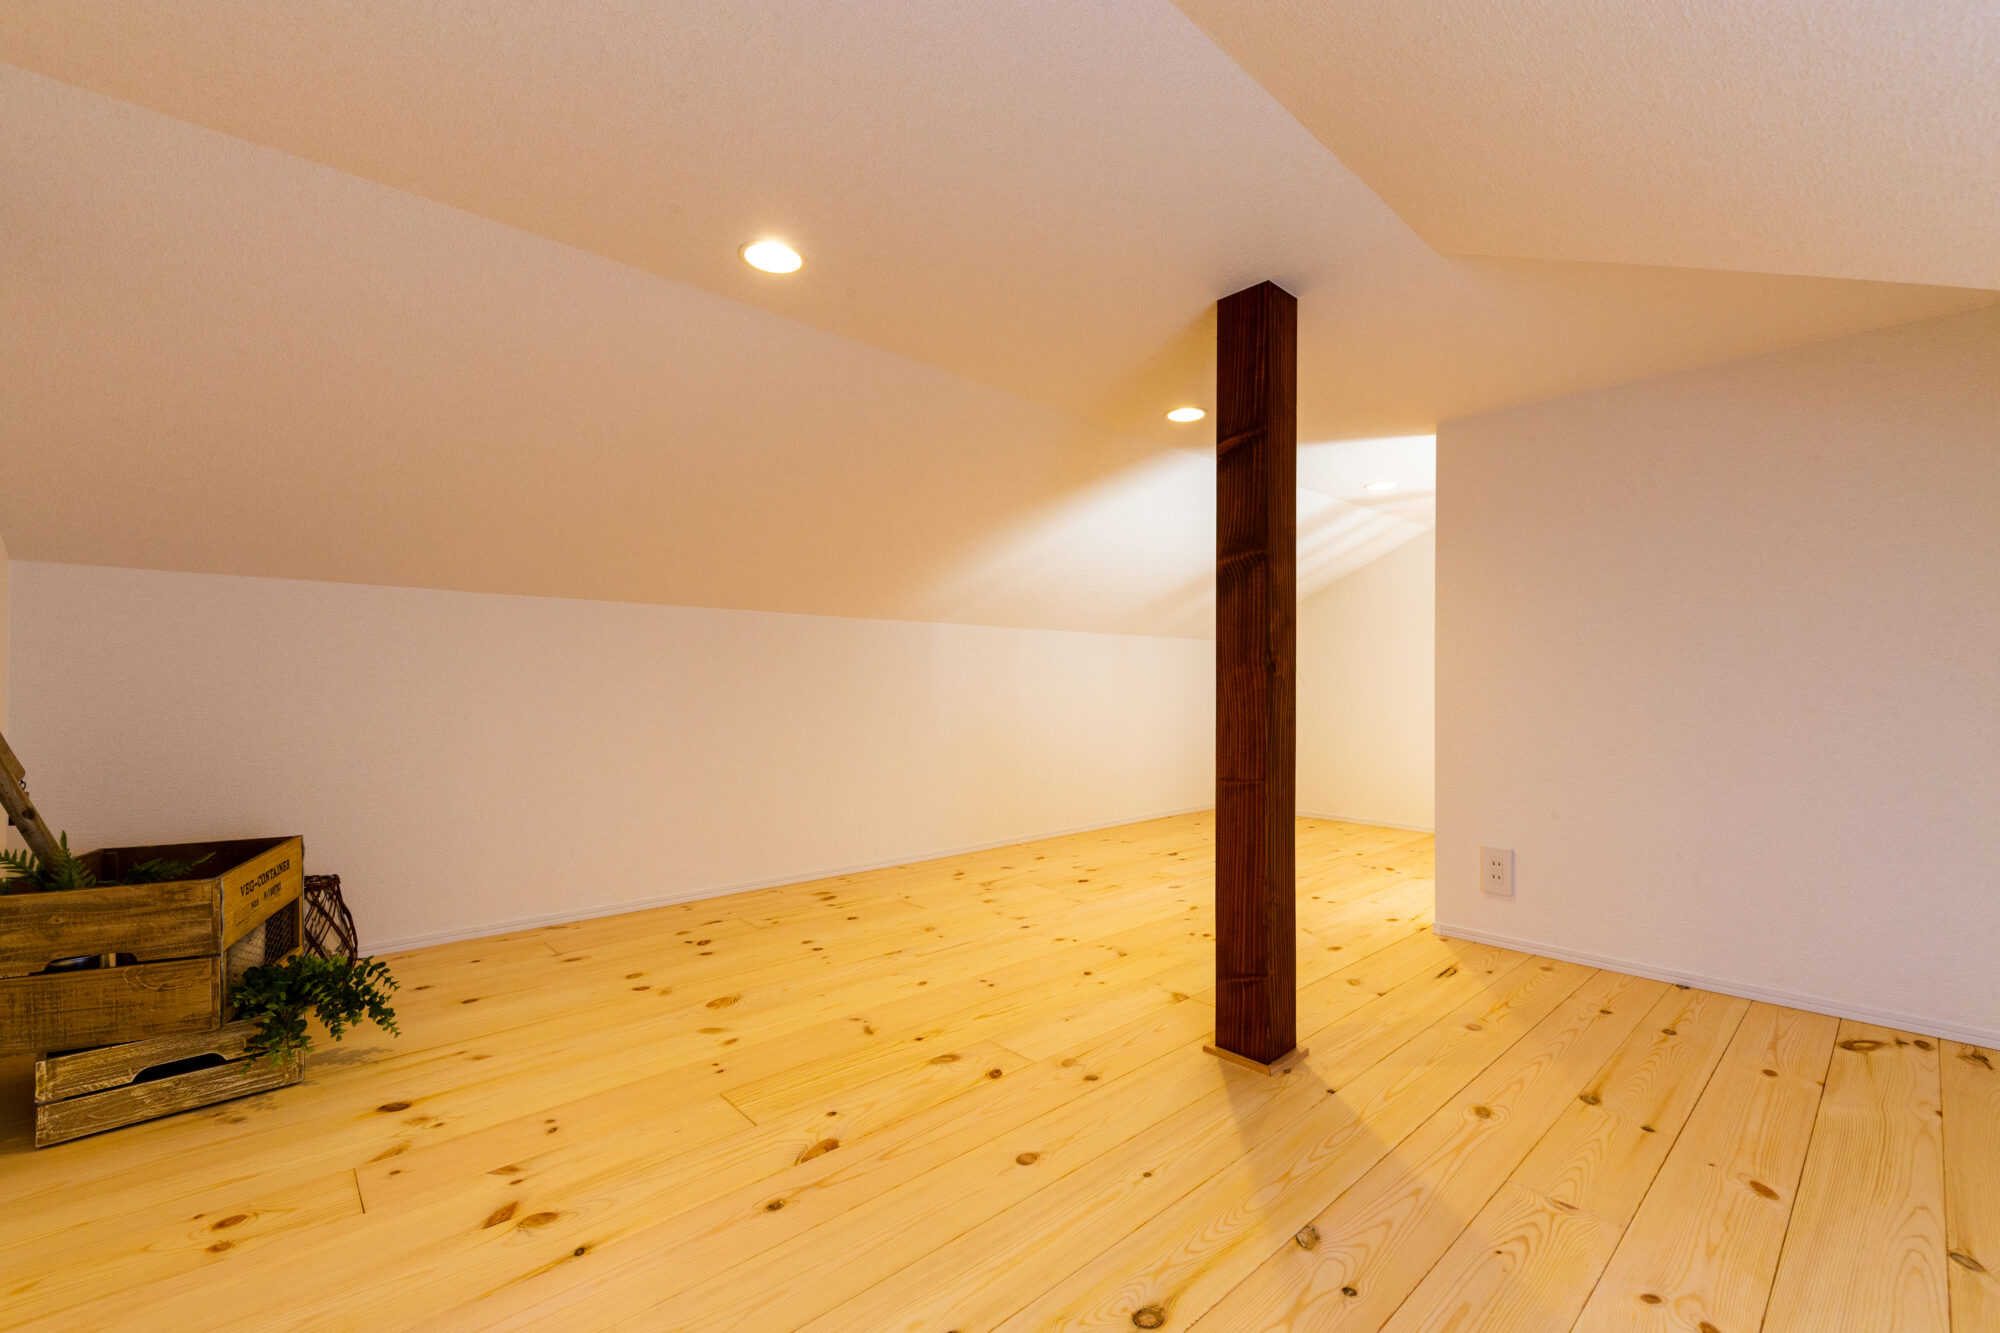 「屋根裏」空間のようなロフトがカントリー調を引き立ててくれるお家です。